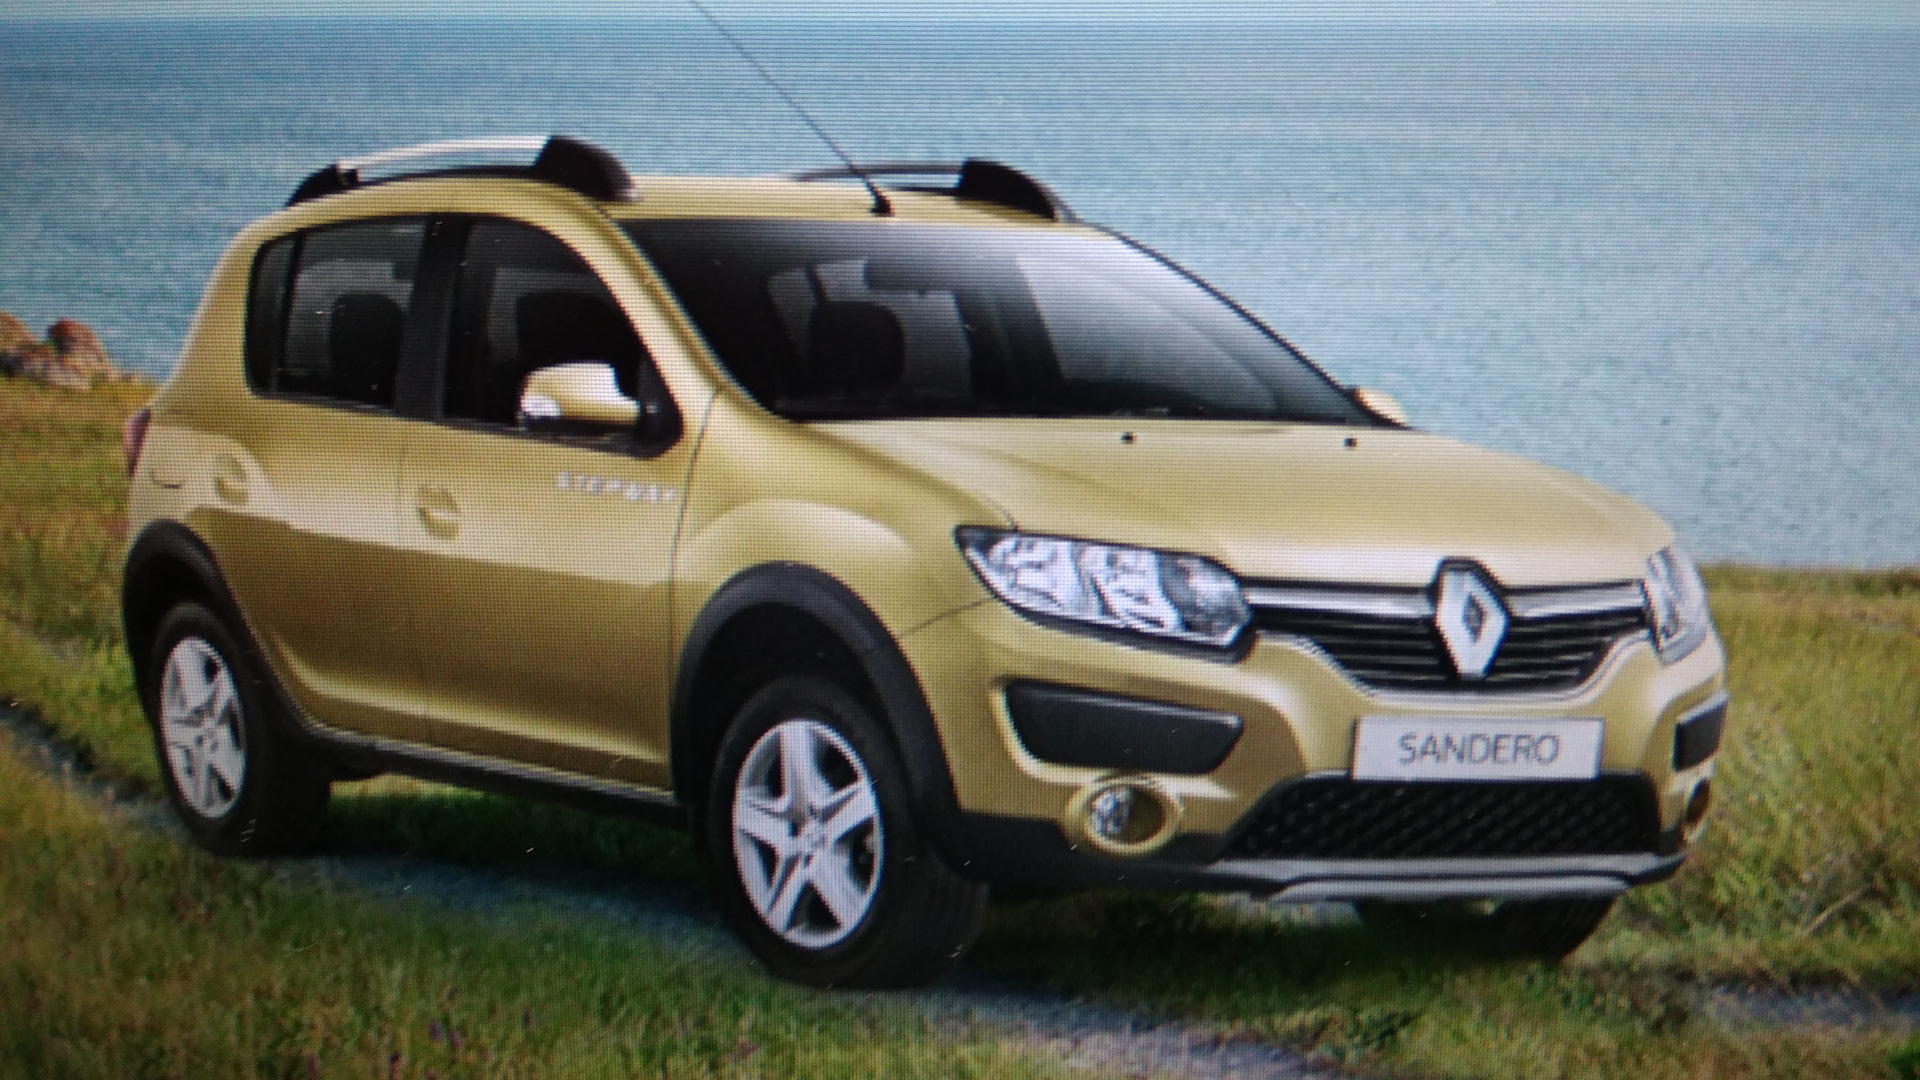 Реклама Renault Sandero Stepway 2014